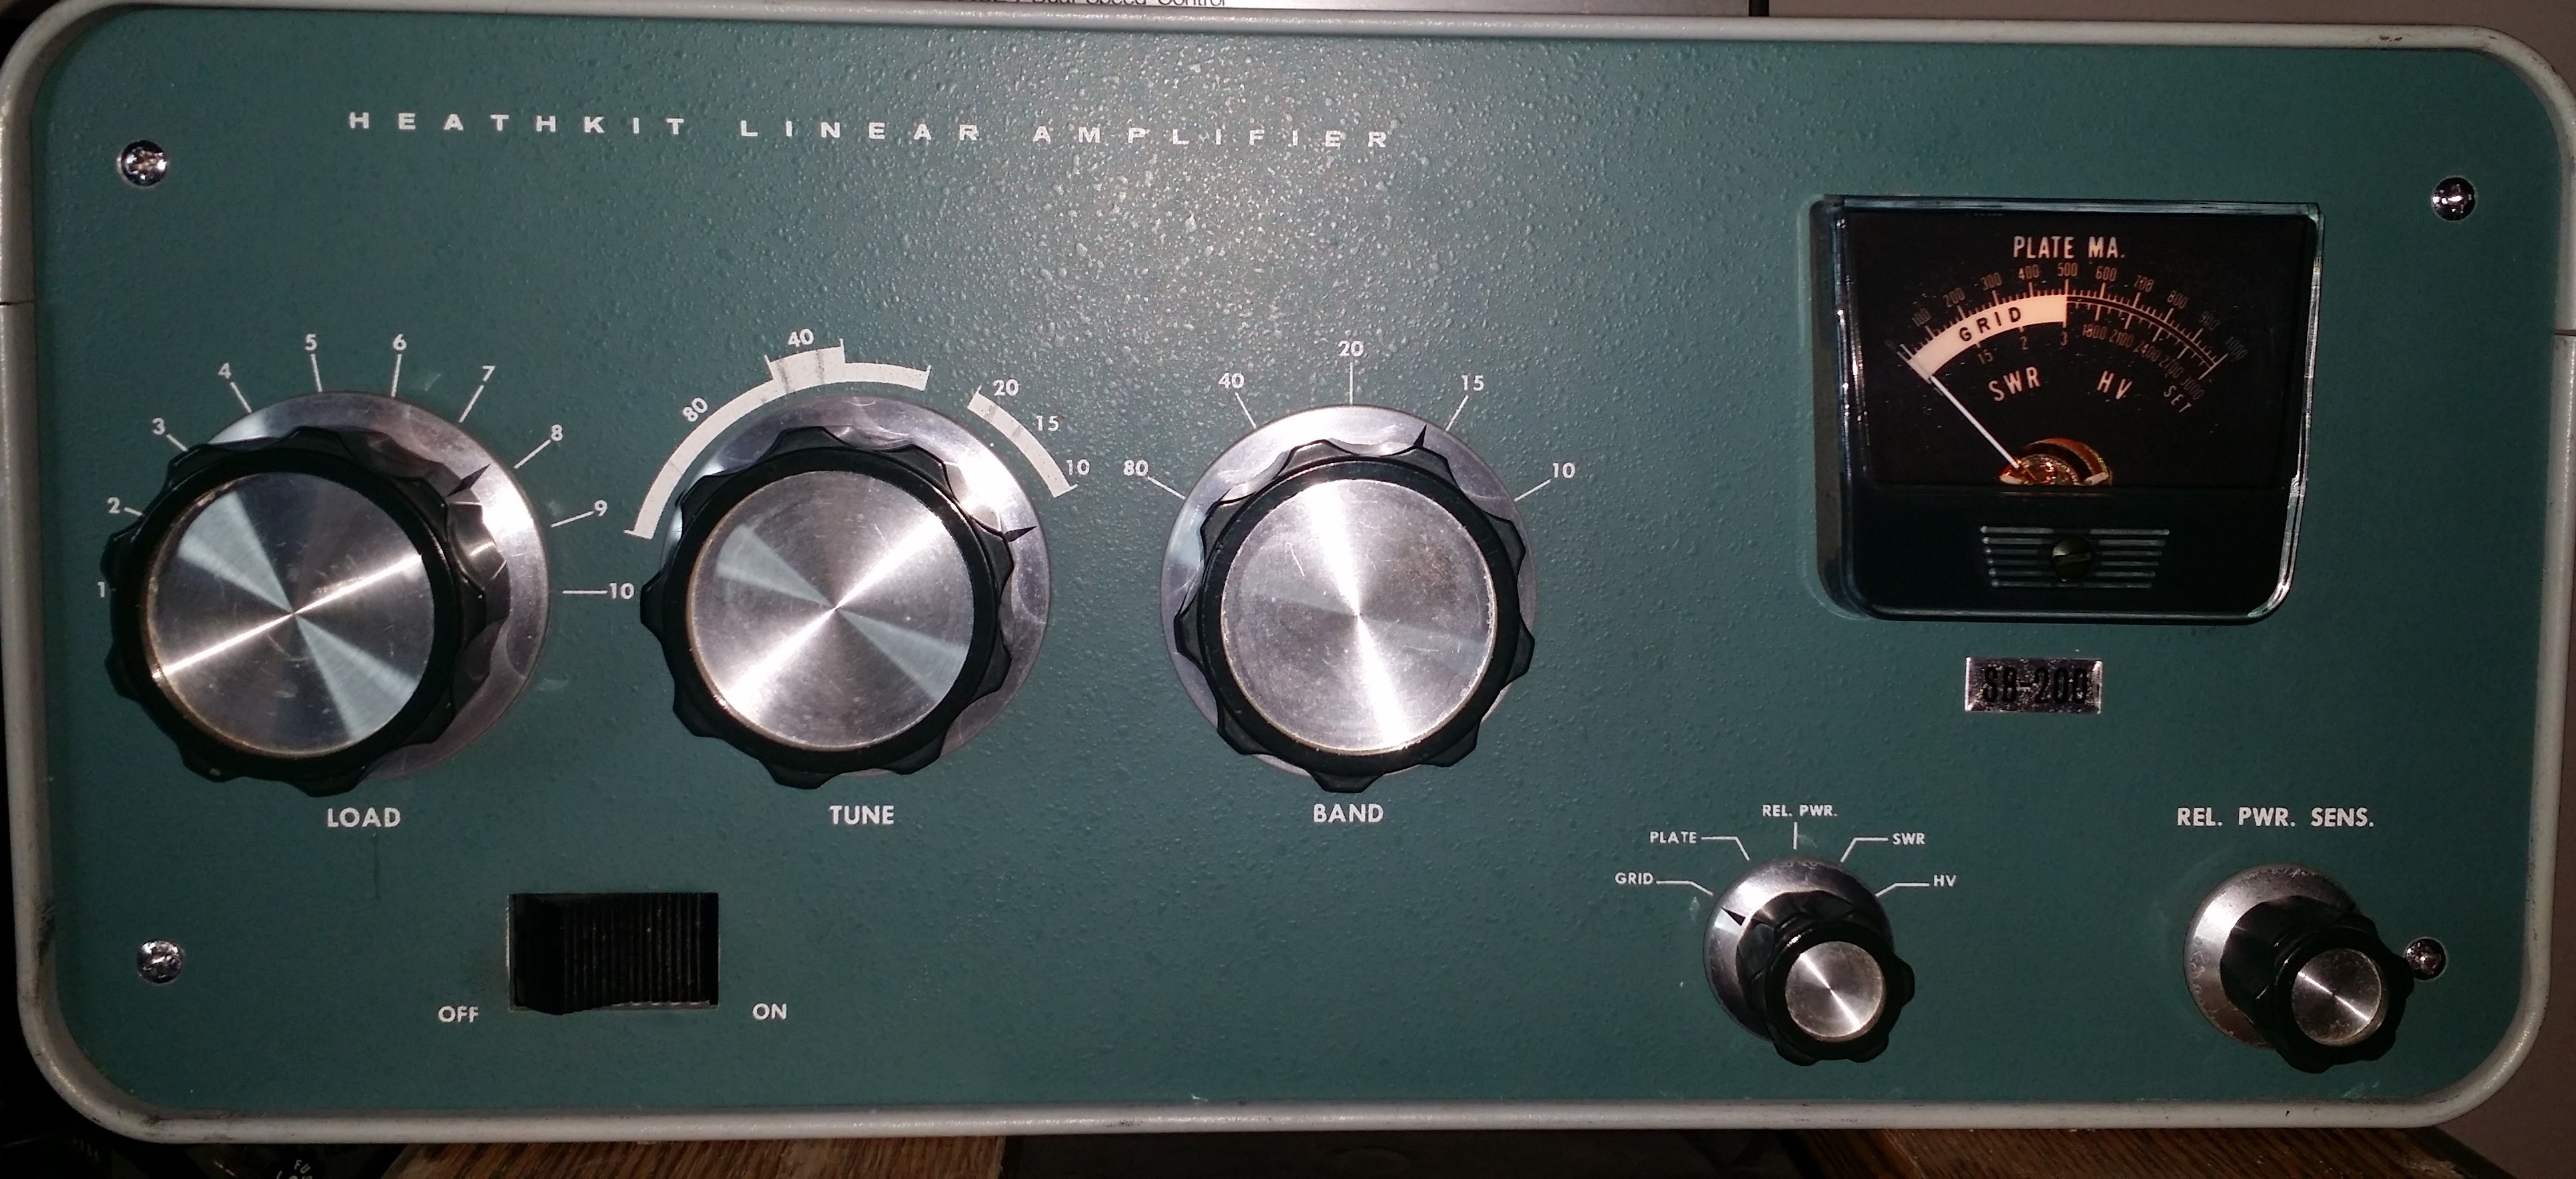 Image result for amplificador heathkit sb-200 universal radio